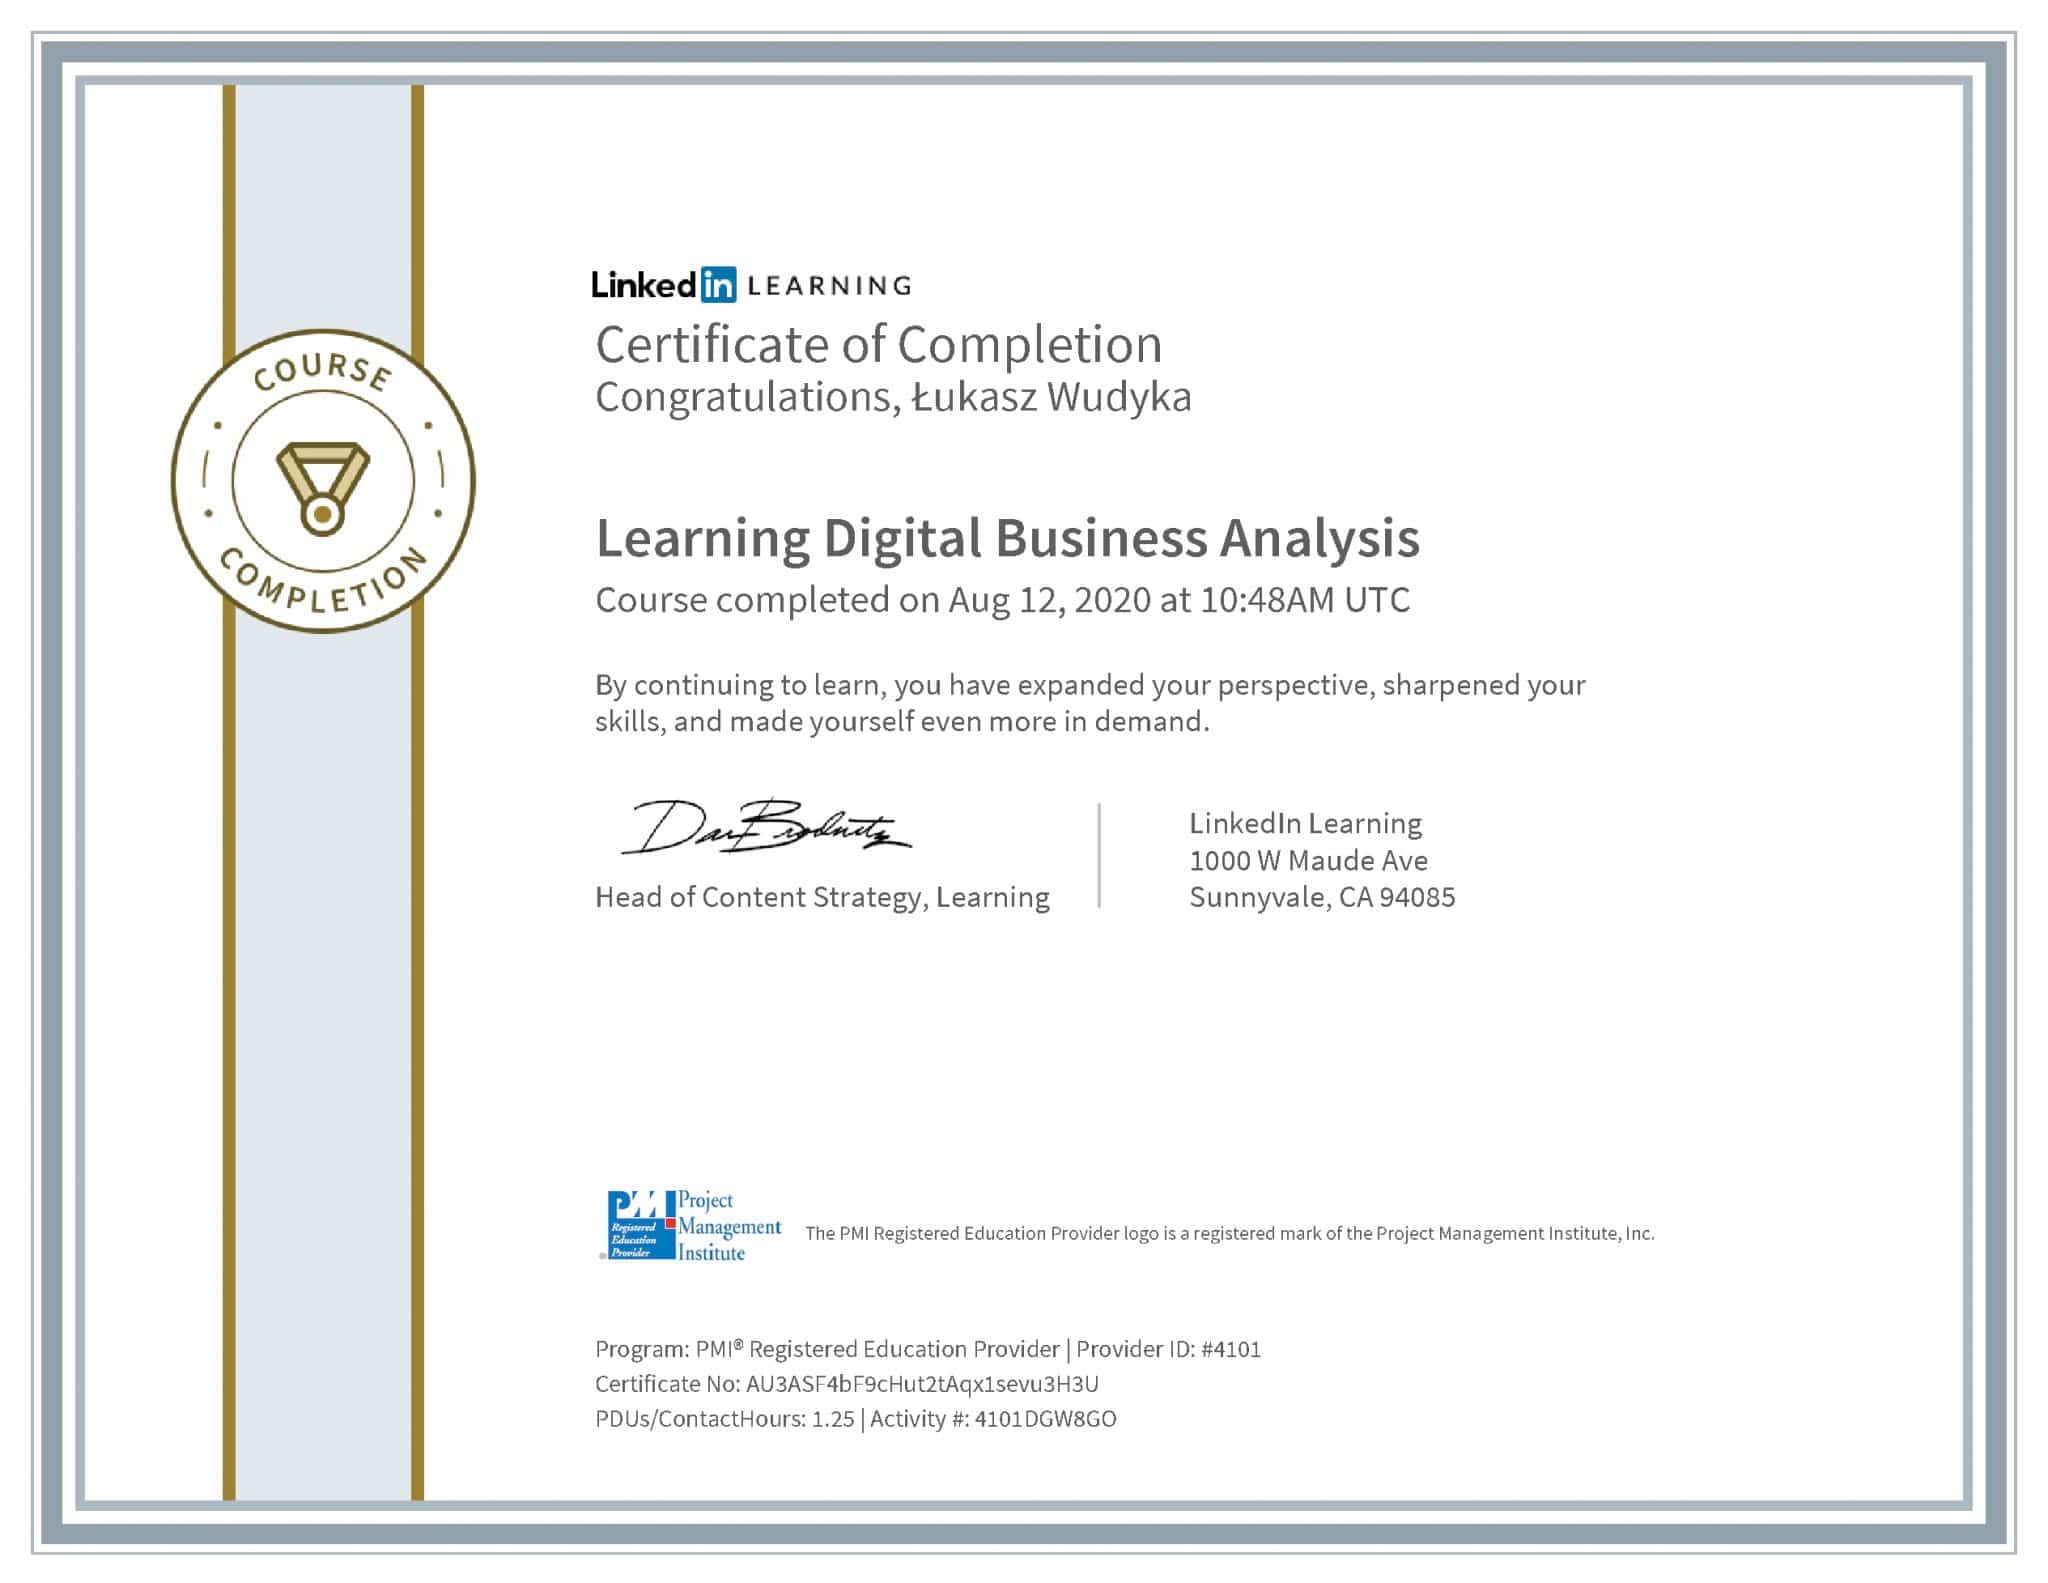 Łukasz Wudyka certyfikat LinkedIn Learning Digital Business Analysis PMI